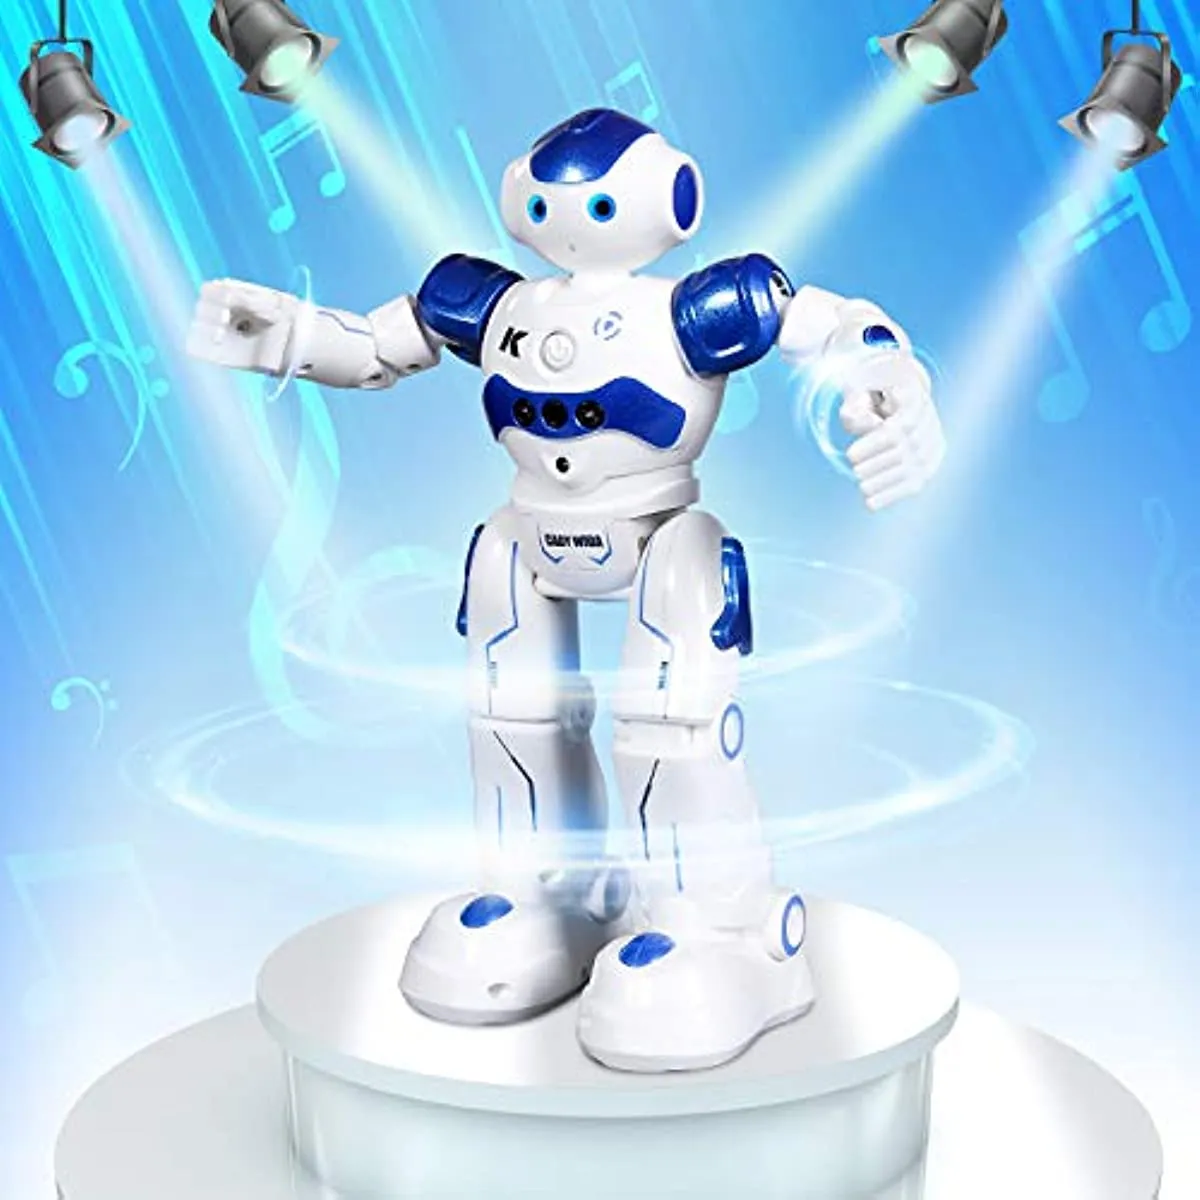 https://ae01.alicdn.com/kf/S3f1e1919dc094d2795b49dc9a3f96747k/RC-Robot-Toy-Kids-Intelligence-Gesture-Sensing-Remote-Control-Robots-Program-for-Kids-Aged-3-4.jpg